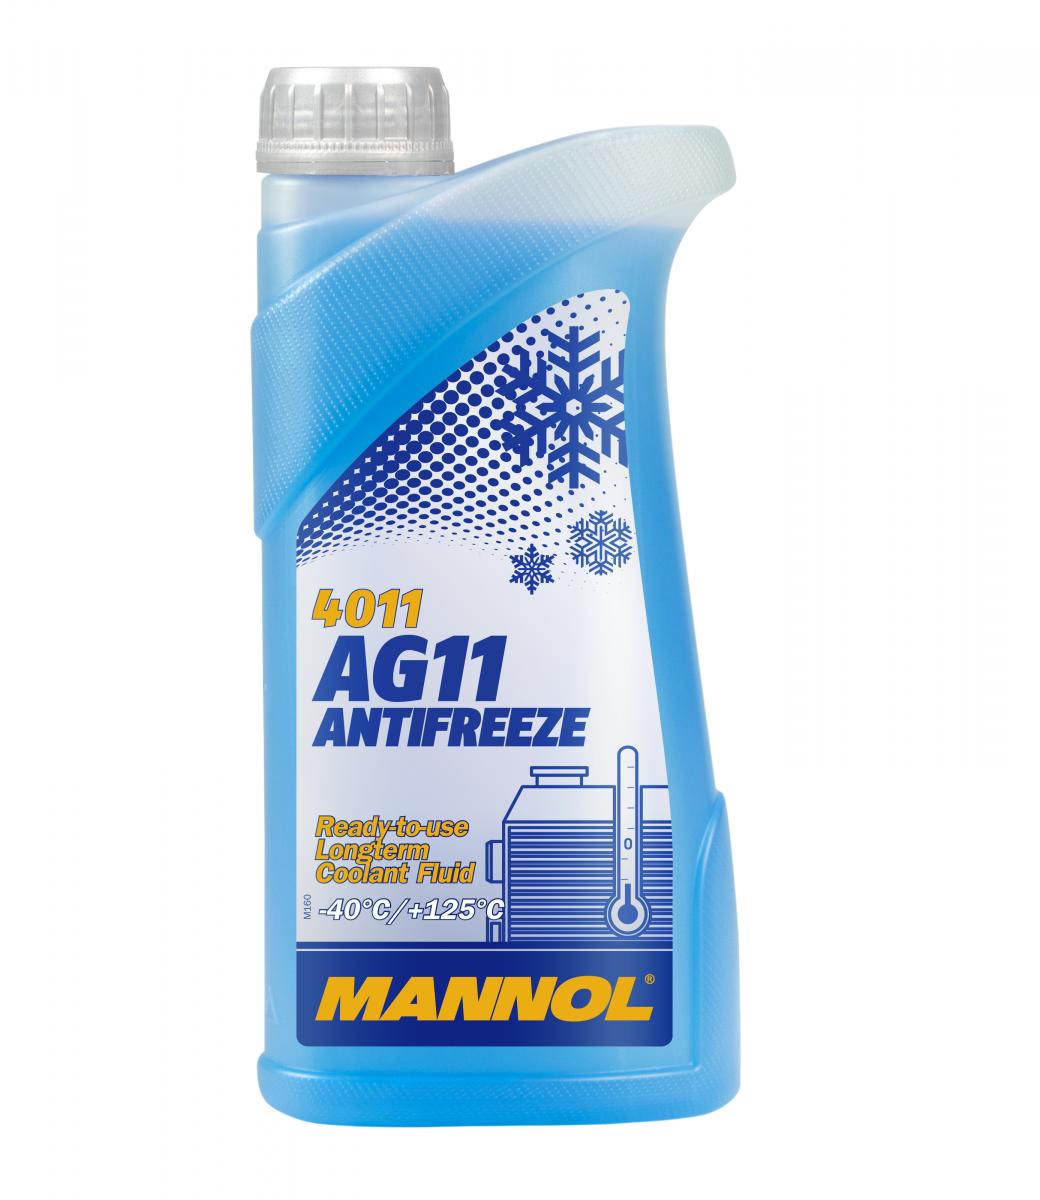 3 Liter (3x1) MANNOL Antifreeze AG11 Fertiggemisch blau -40°C G11 Kühlerfrostschutz